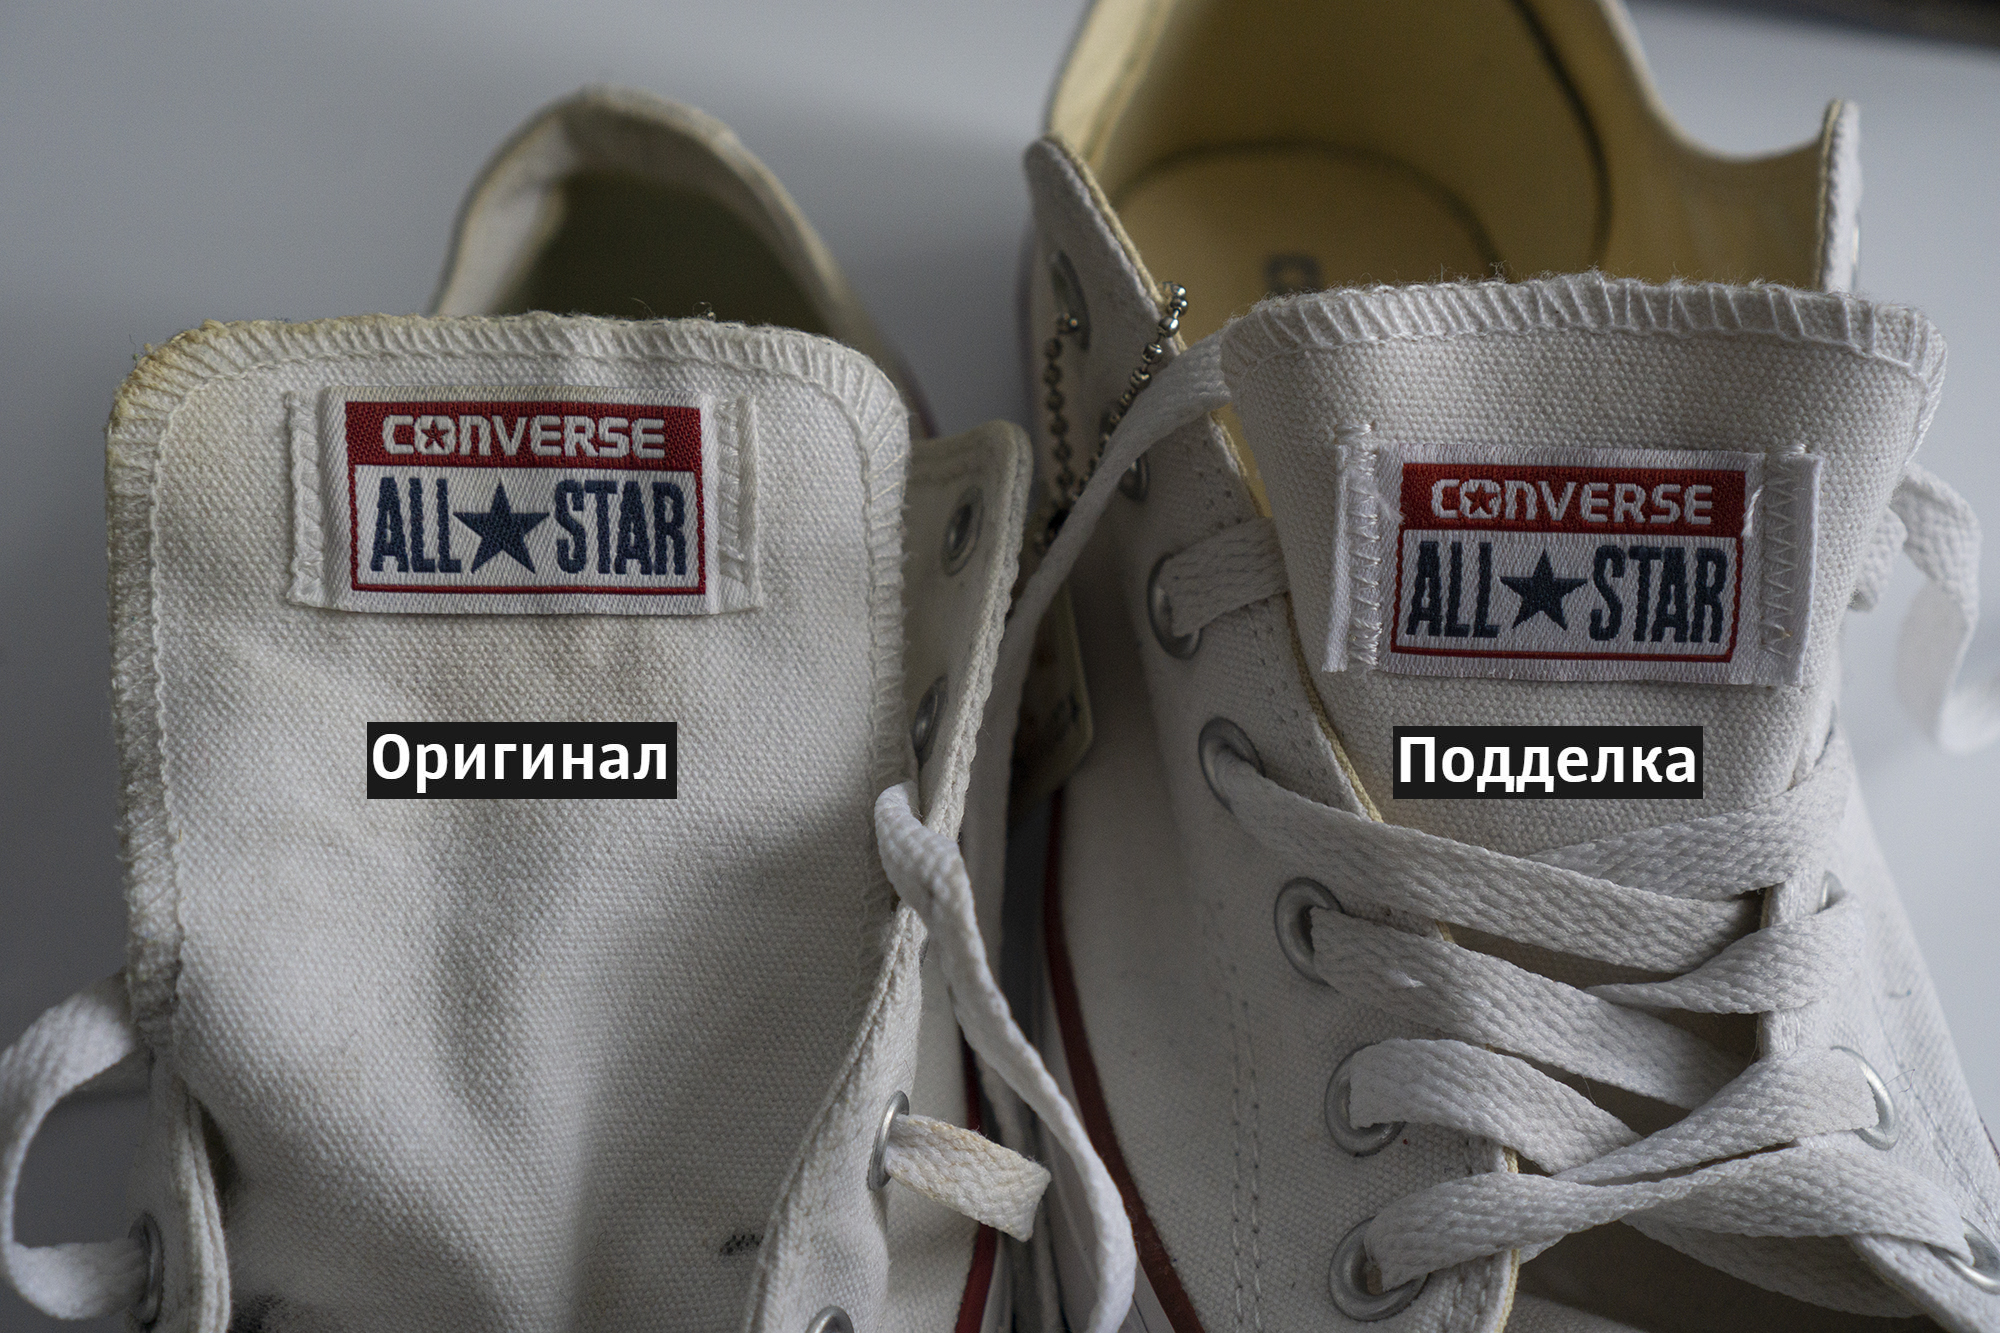 Разрезал и сравнили оригинальные и поддельные Converse All star